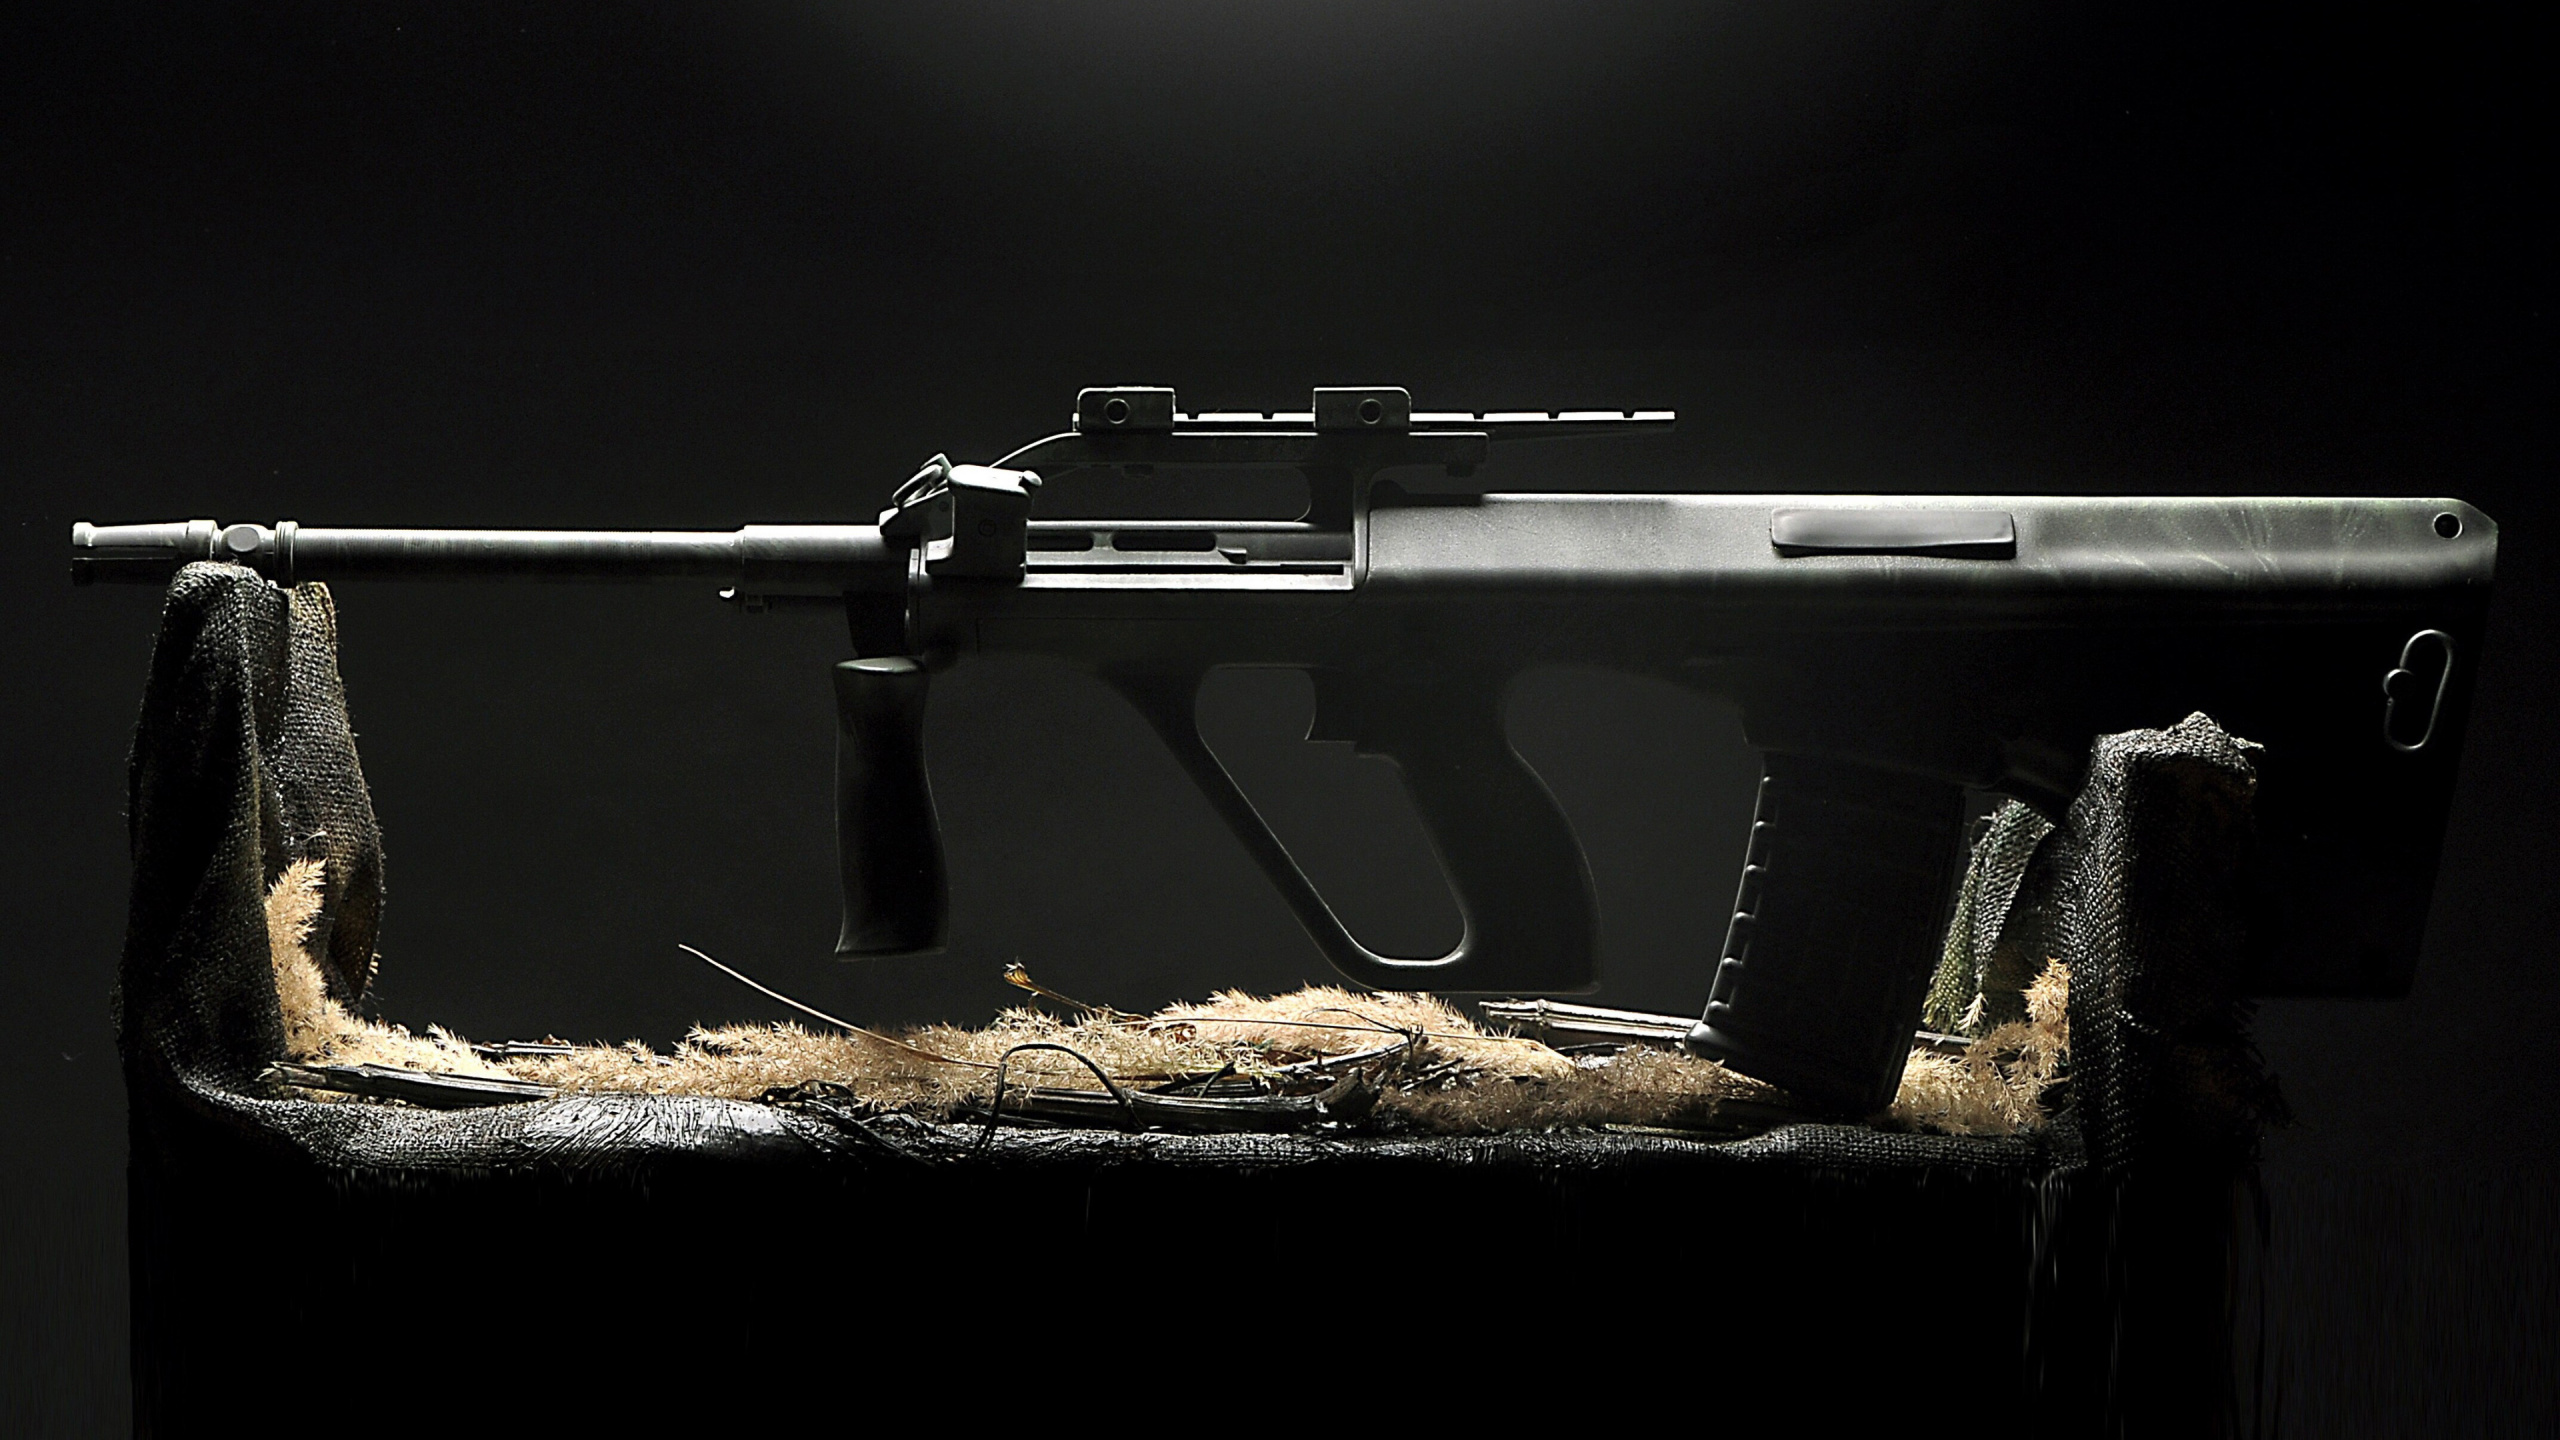 Steyr Aug, Gun, Black, Weapon, Rifle. Wallpaper in 2560x1440 Resolution